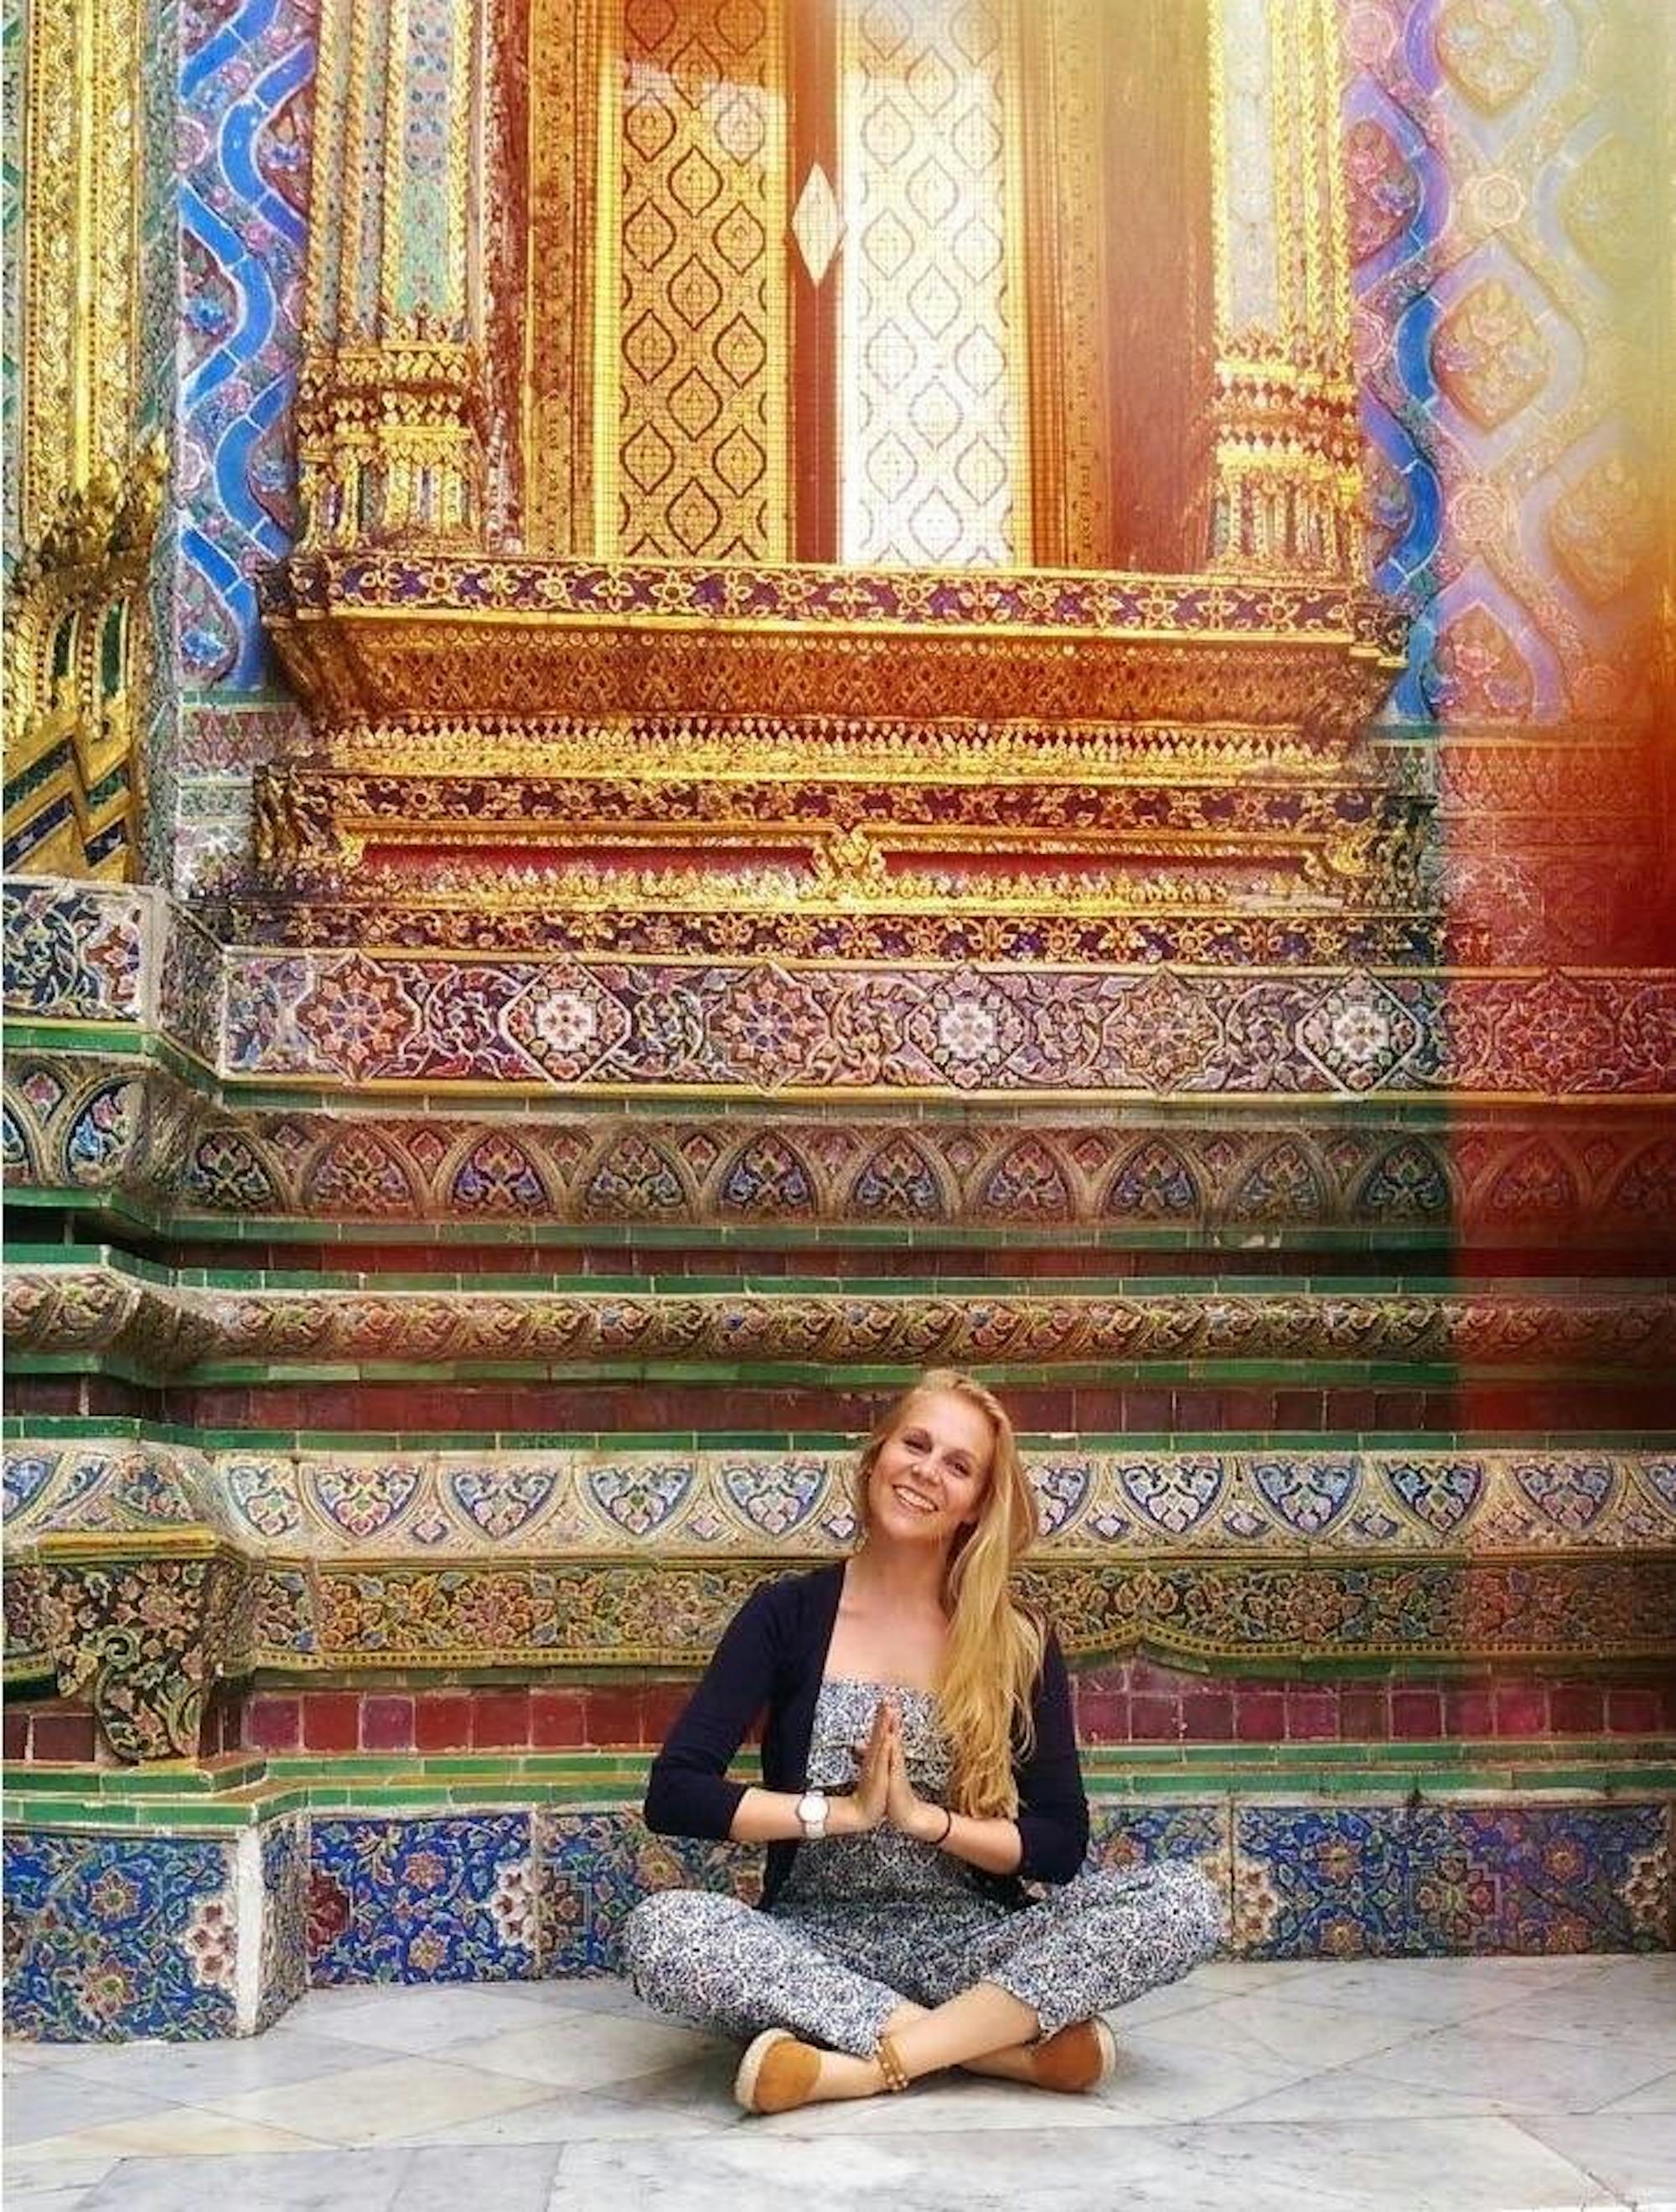 Młoda kobieta (Meike) siedzi w pozycji na kształt siedzenia krawca, medytując w świątyni. Za nią widać kolorowe malowidła.